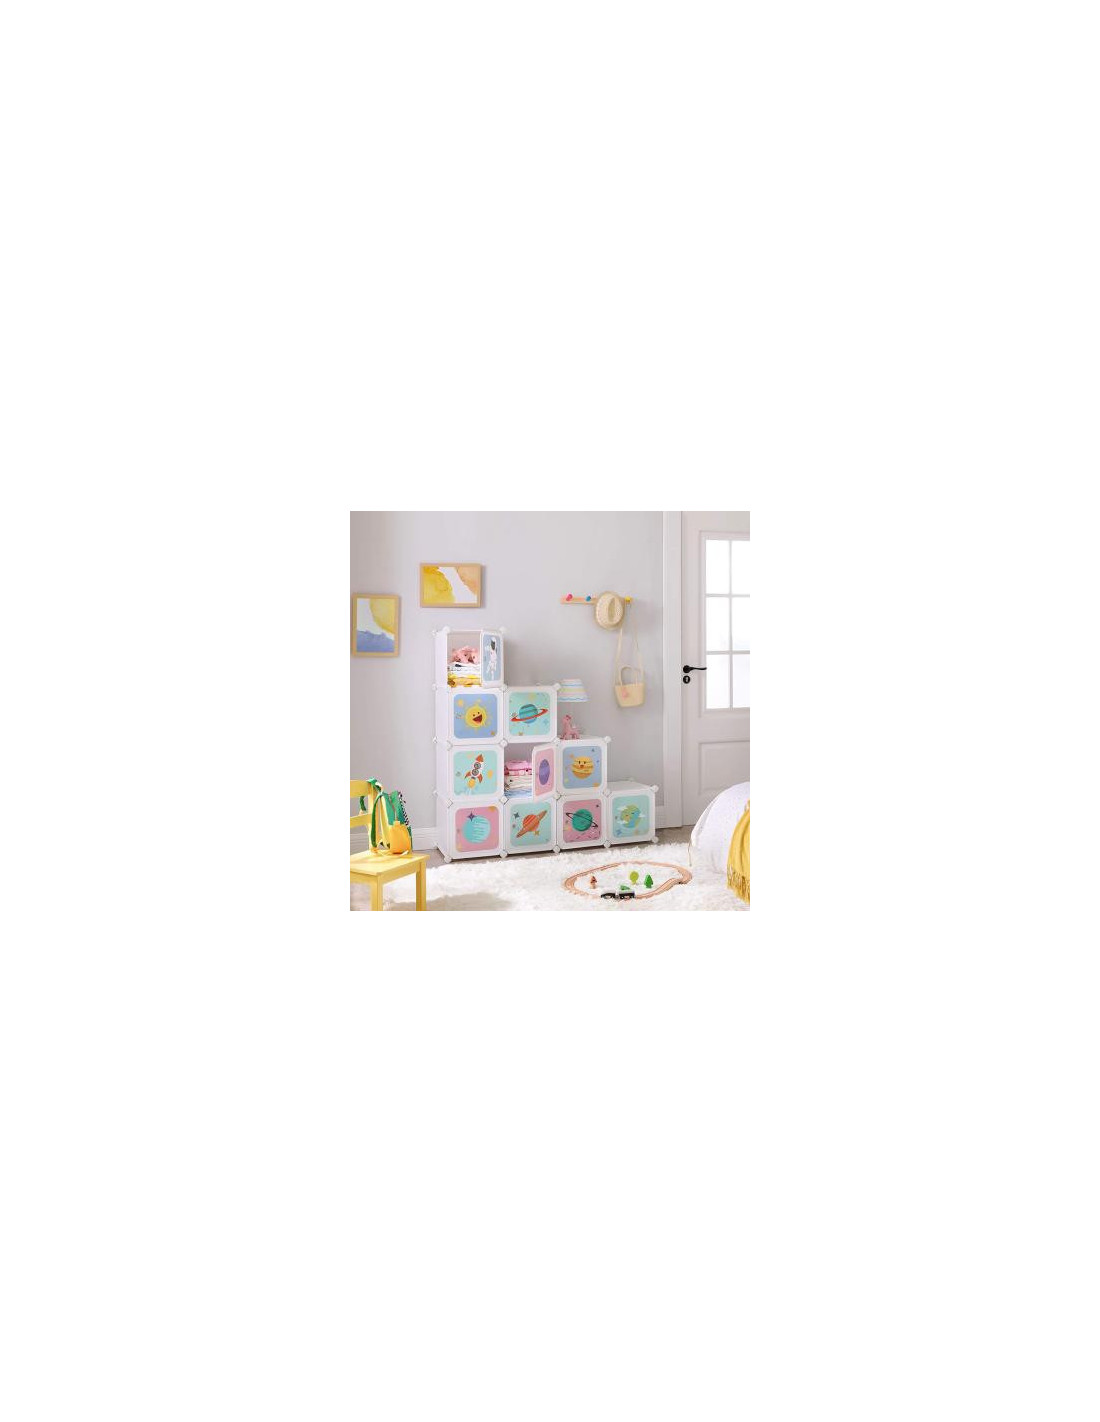 Rangement enfant armoire modulable 6 cubes garçon - Gris - Kiabi - 63.80€